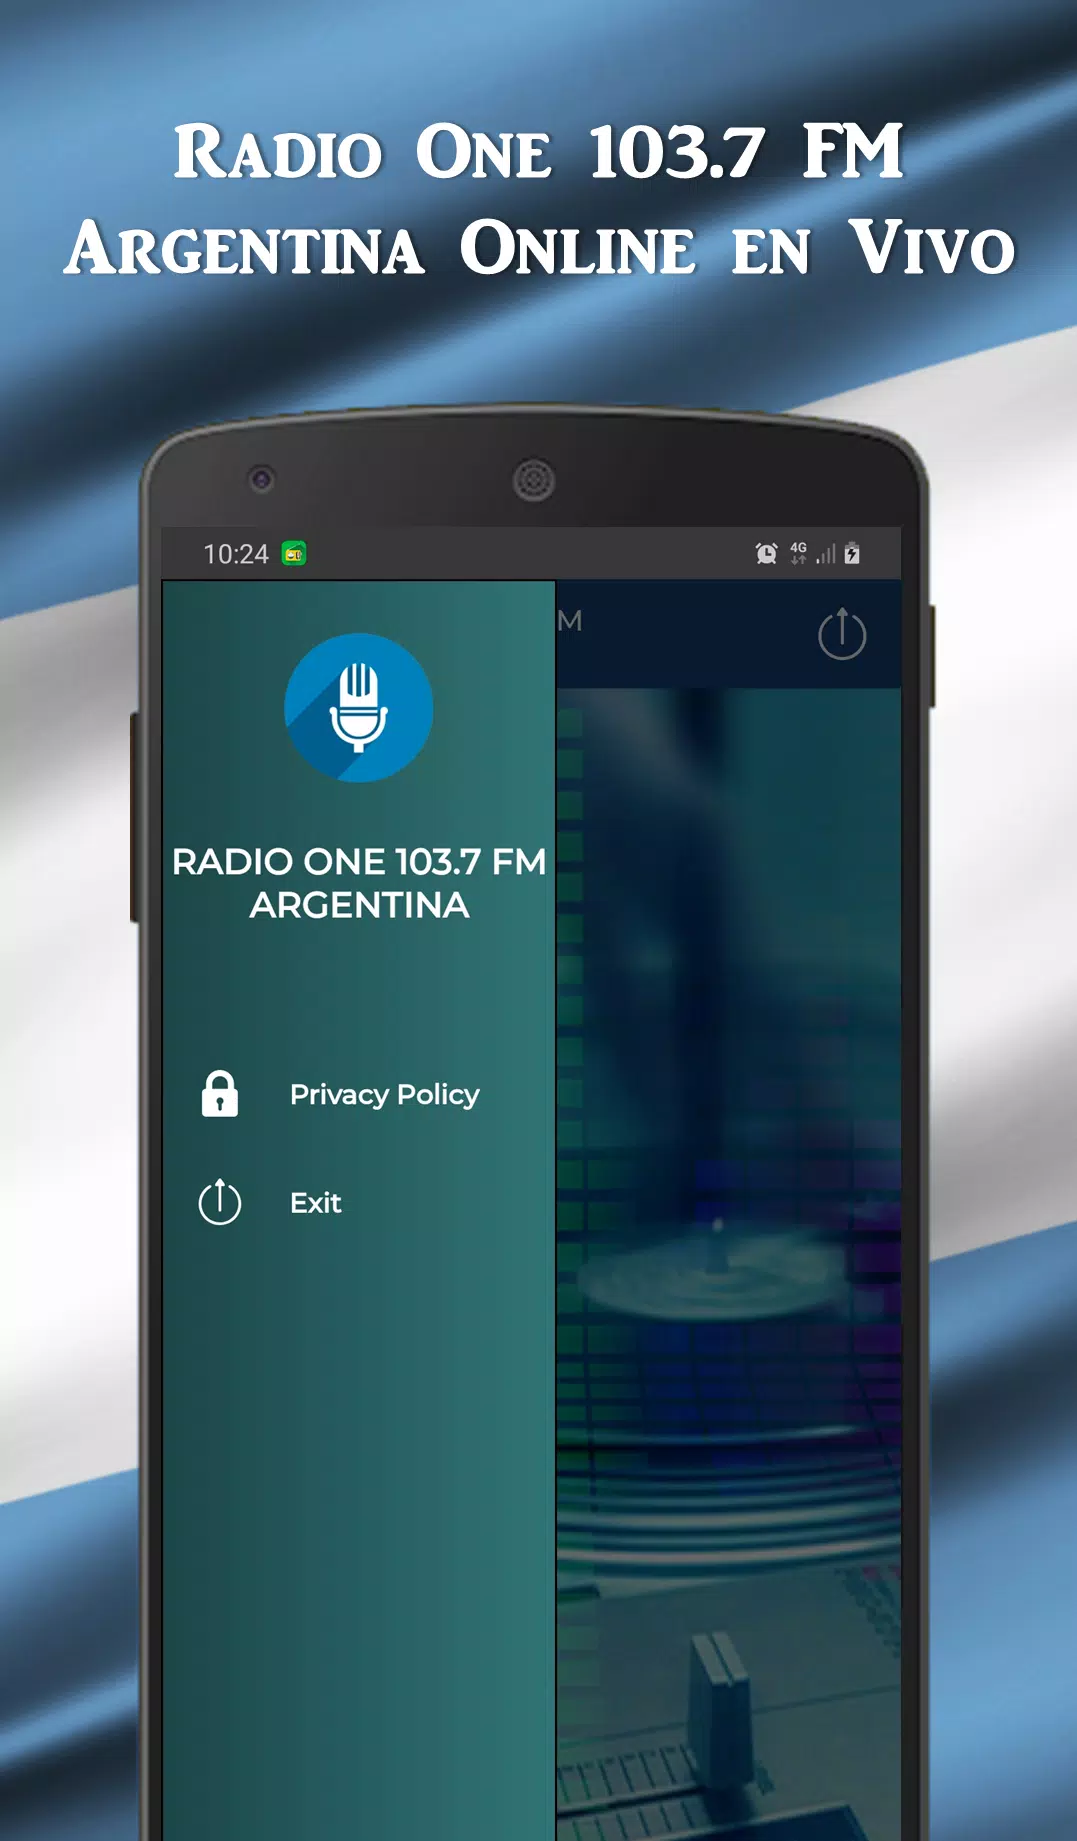 Radio One 103.7 FM Argentina Online en Vivo APK voor Android Download